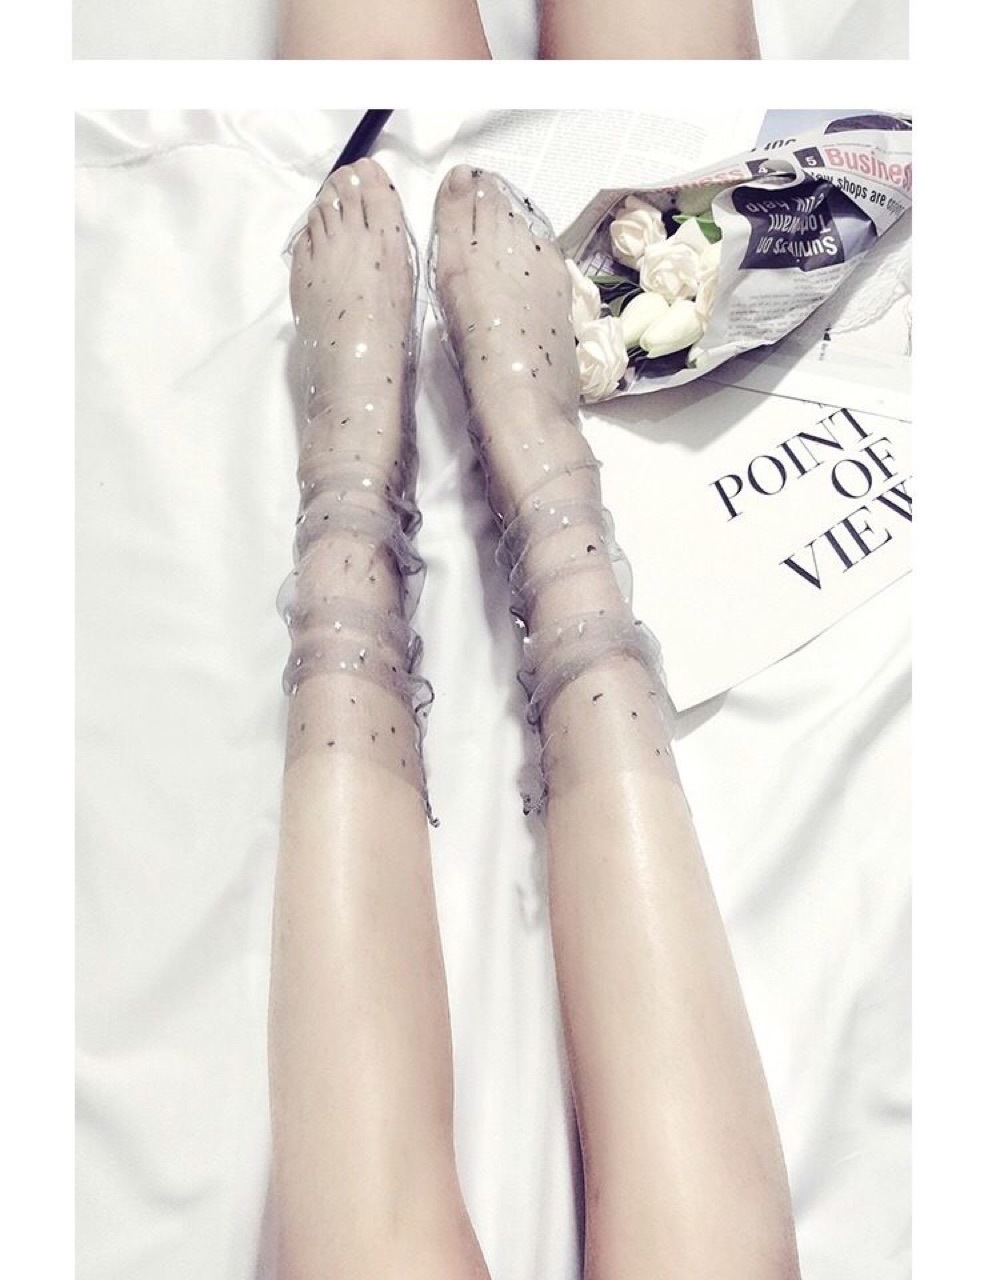 2019 Spring Summer Womens Glitter Thin Soft Shiny Stars Moon Socks Sheer Mesh Tulle Transparent Socks Visible Hosiery Socks